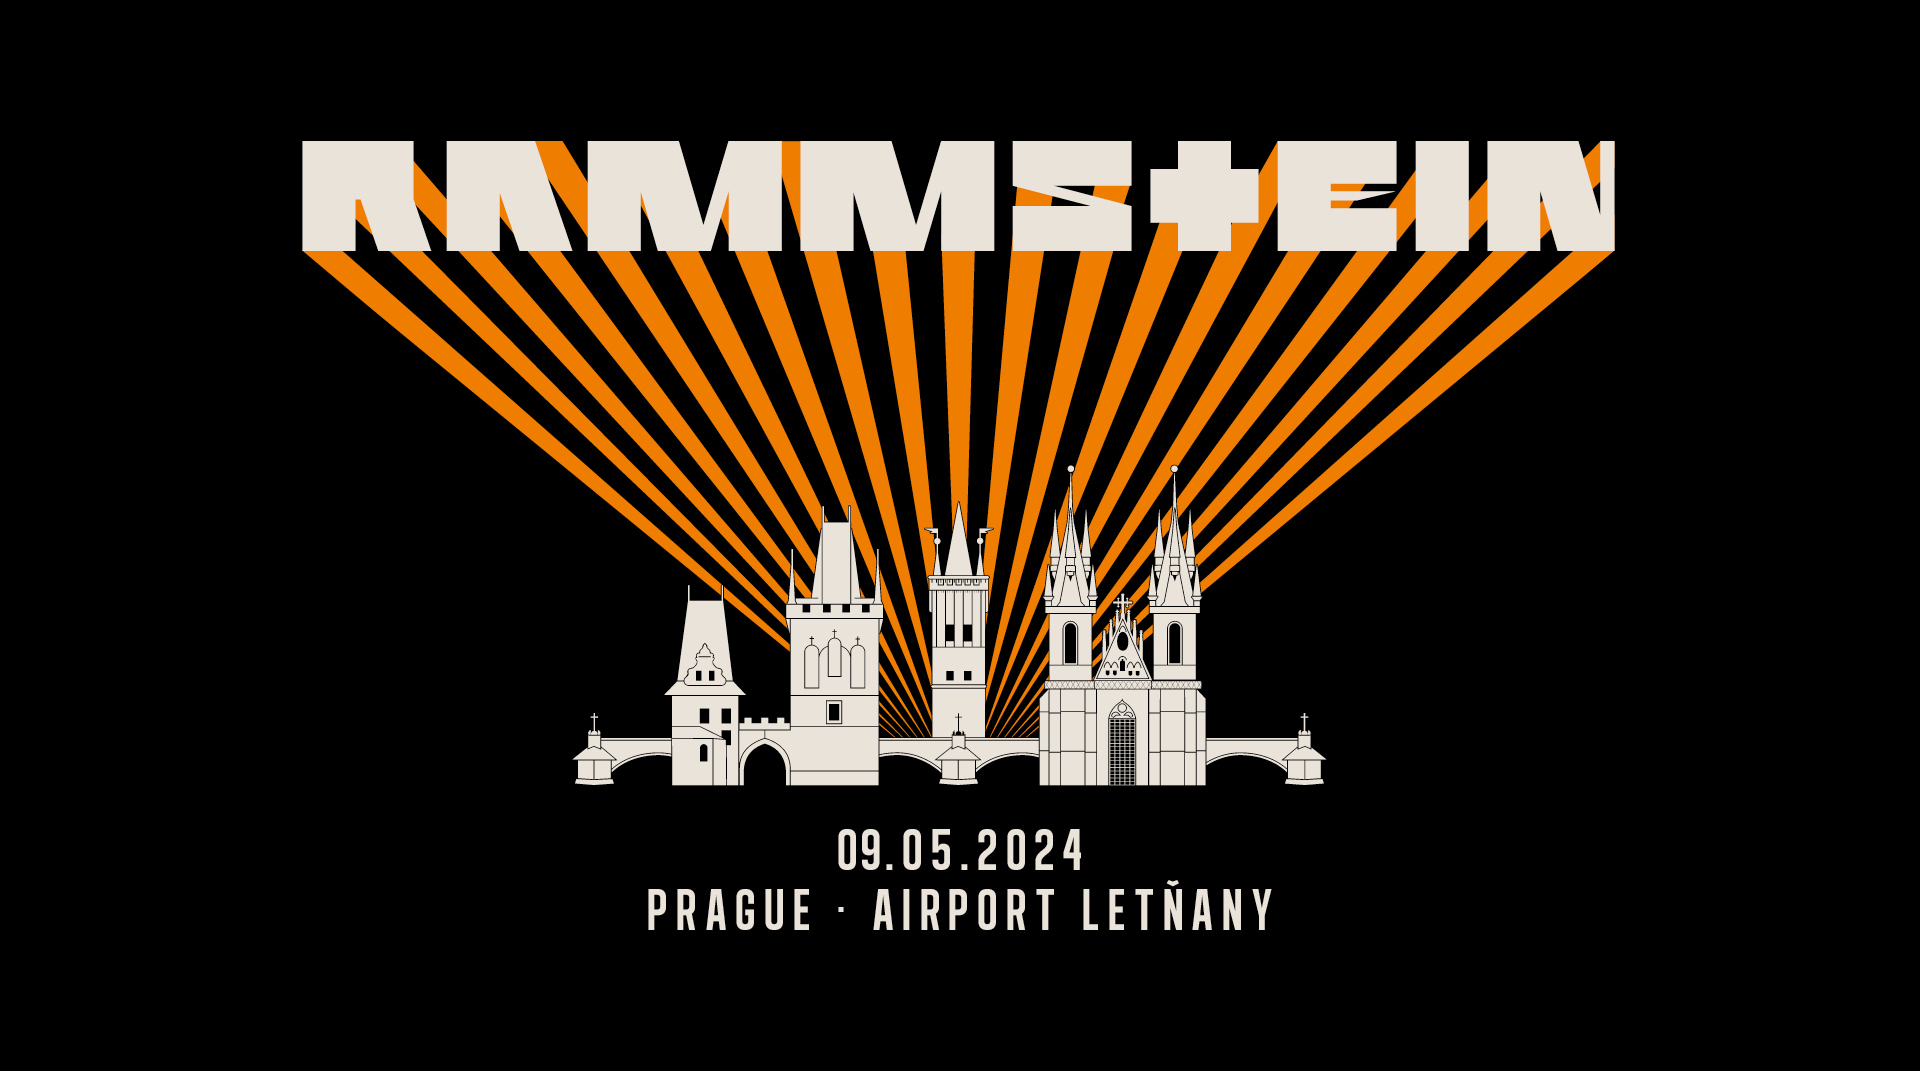 Rammstein - Conciertos de Ensayo 9 Mayo en Airport Letnany. Praga.